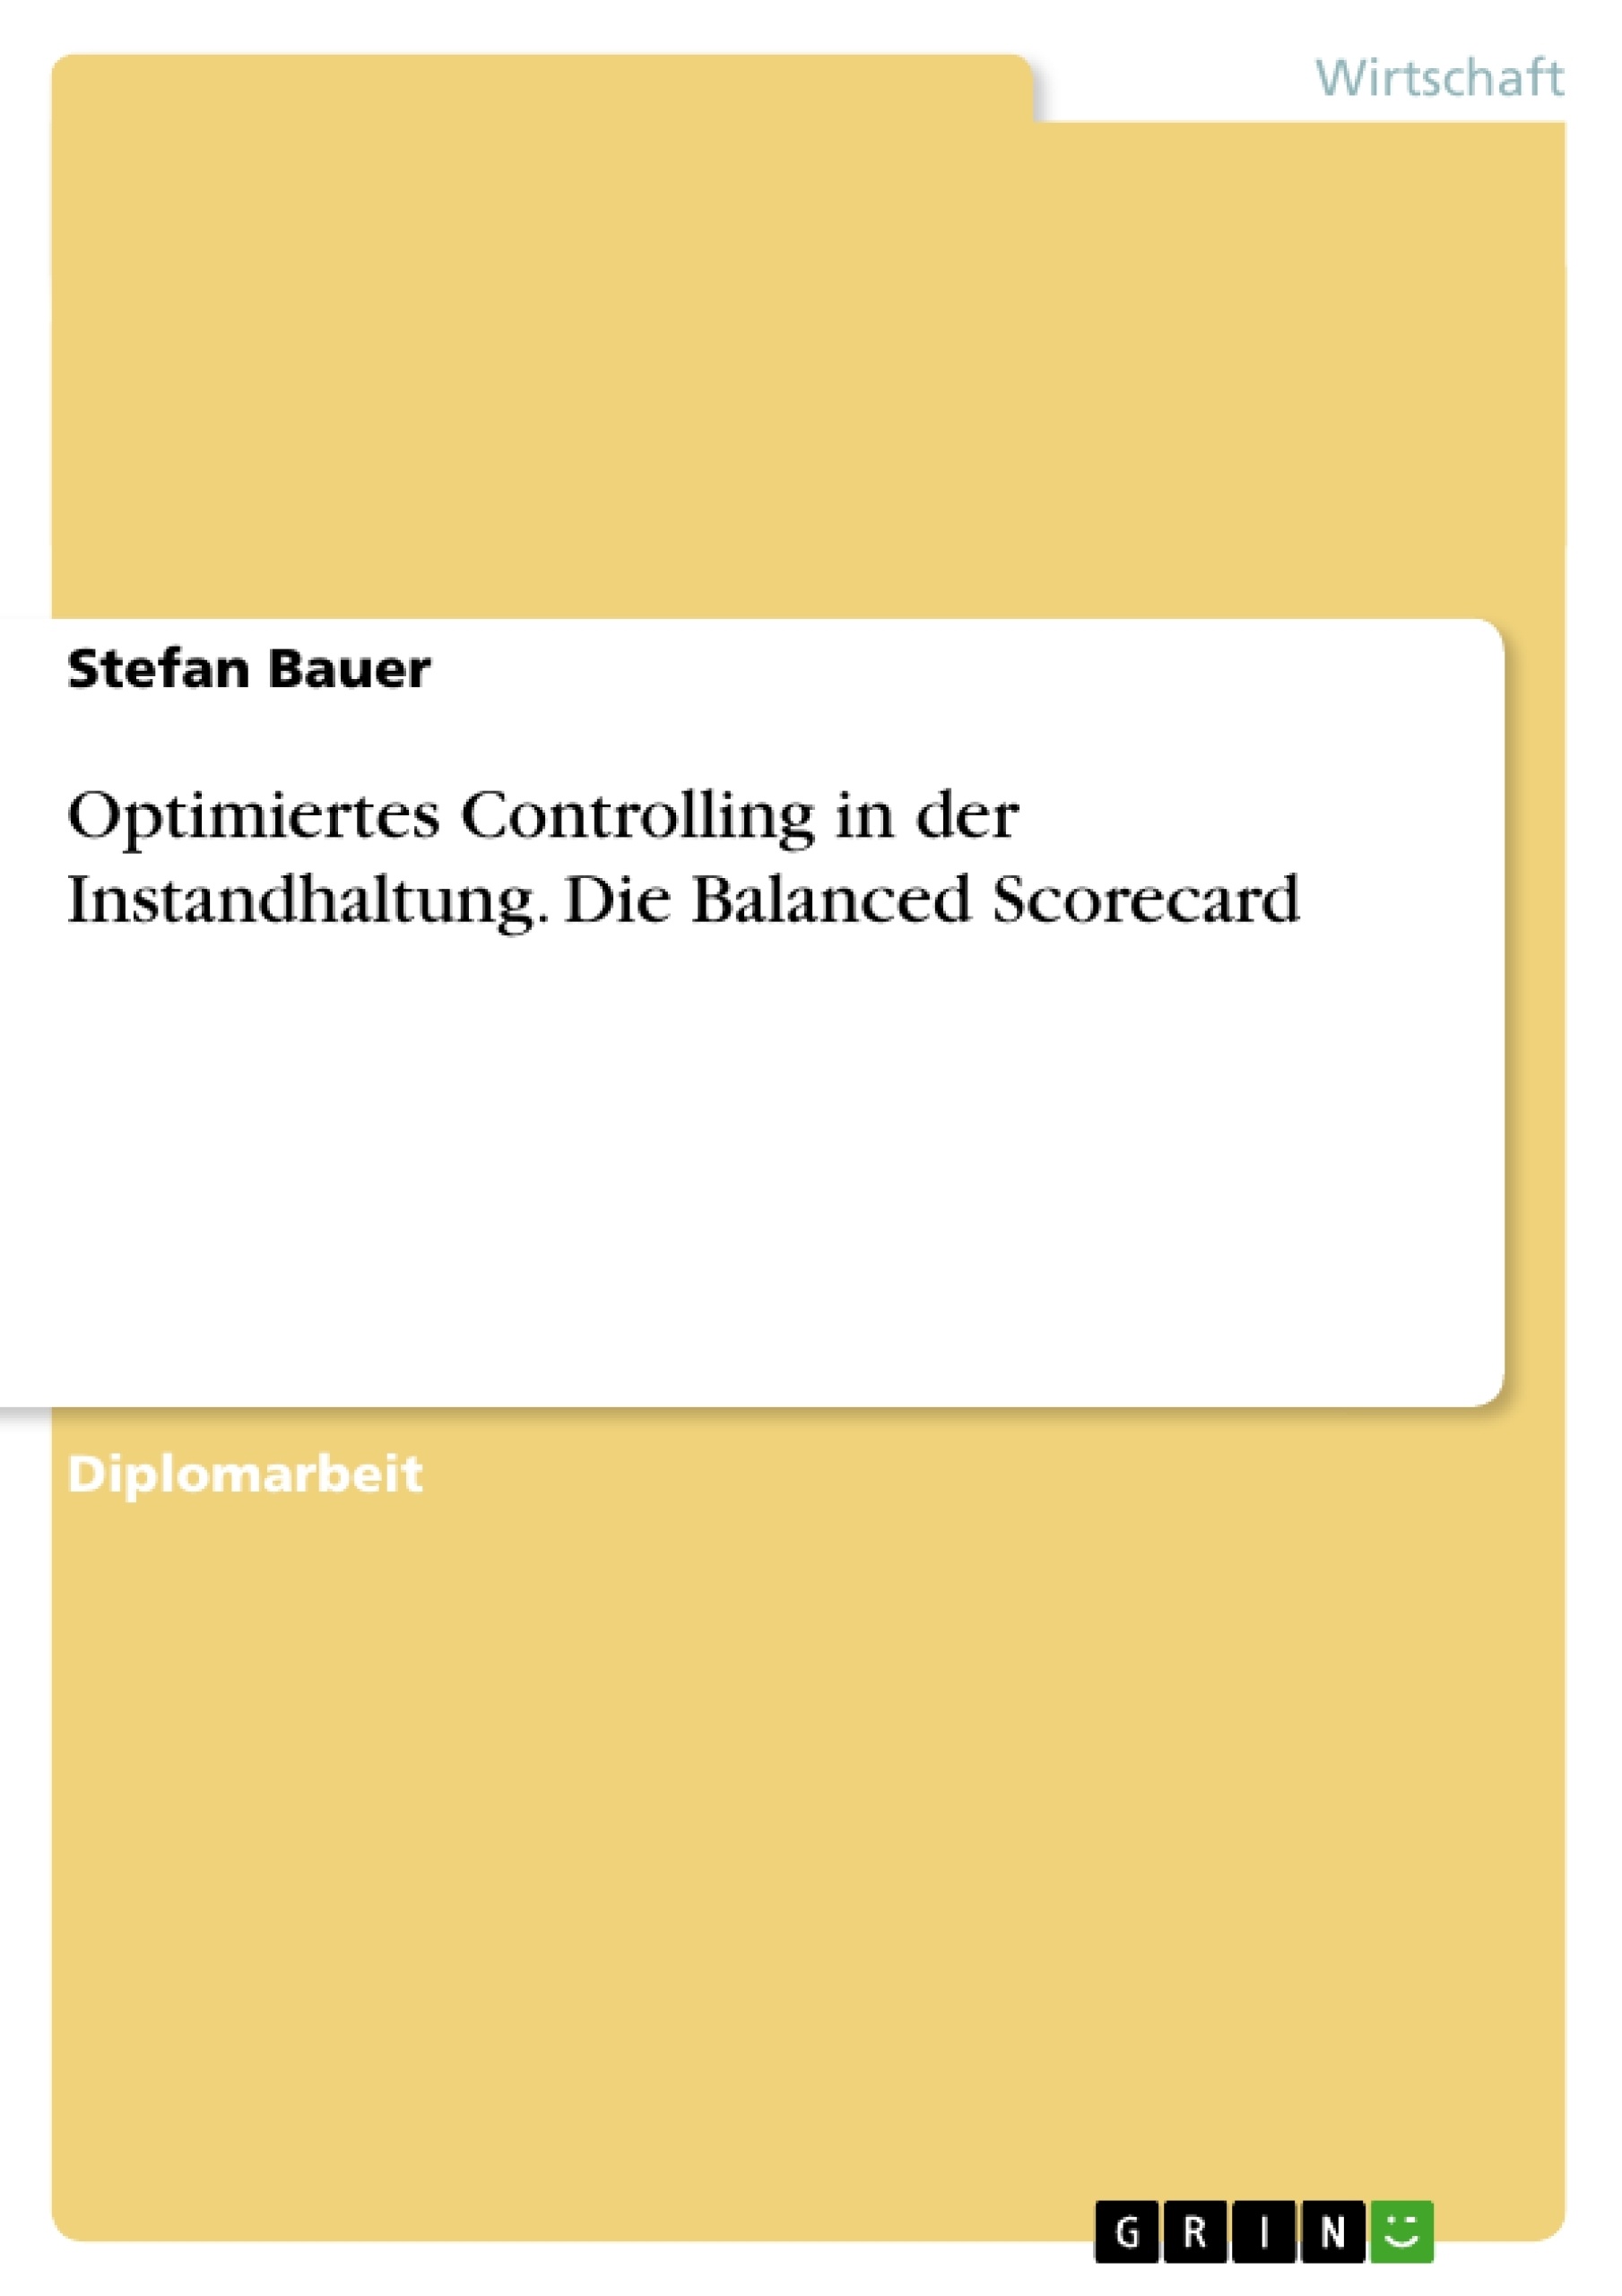 Title: Optimiertes Controlling in der Instandhaltung. Die Balanced Scorecard